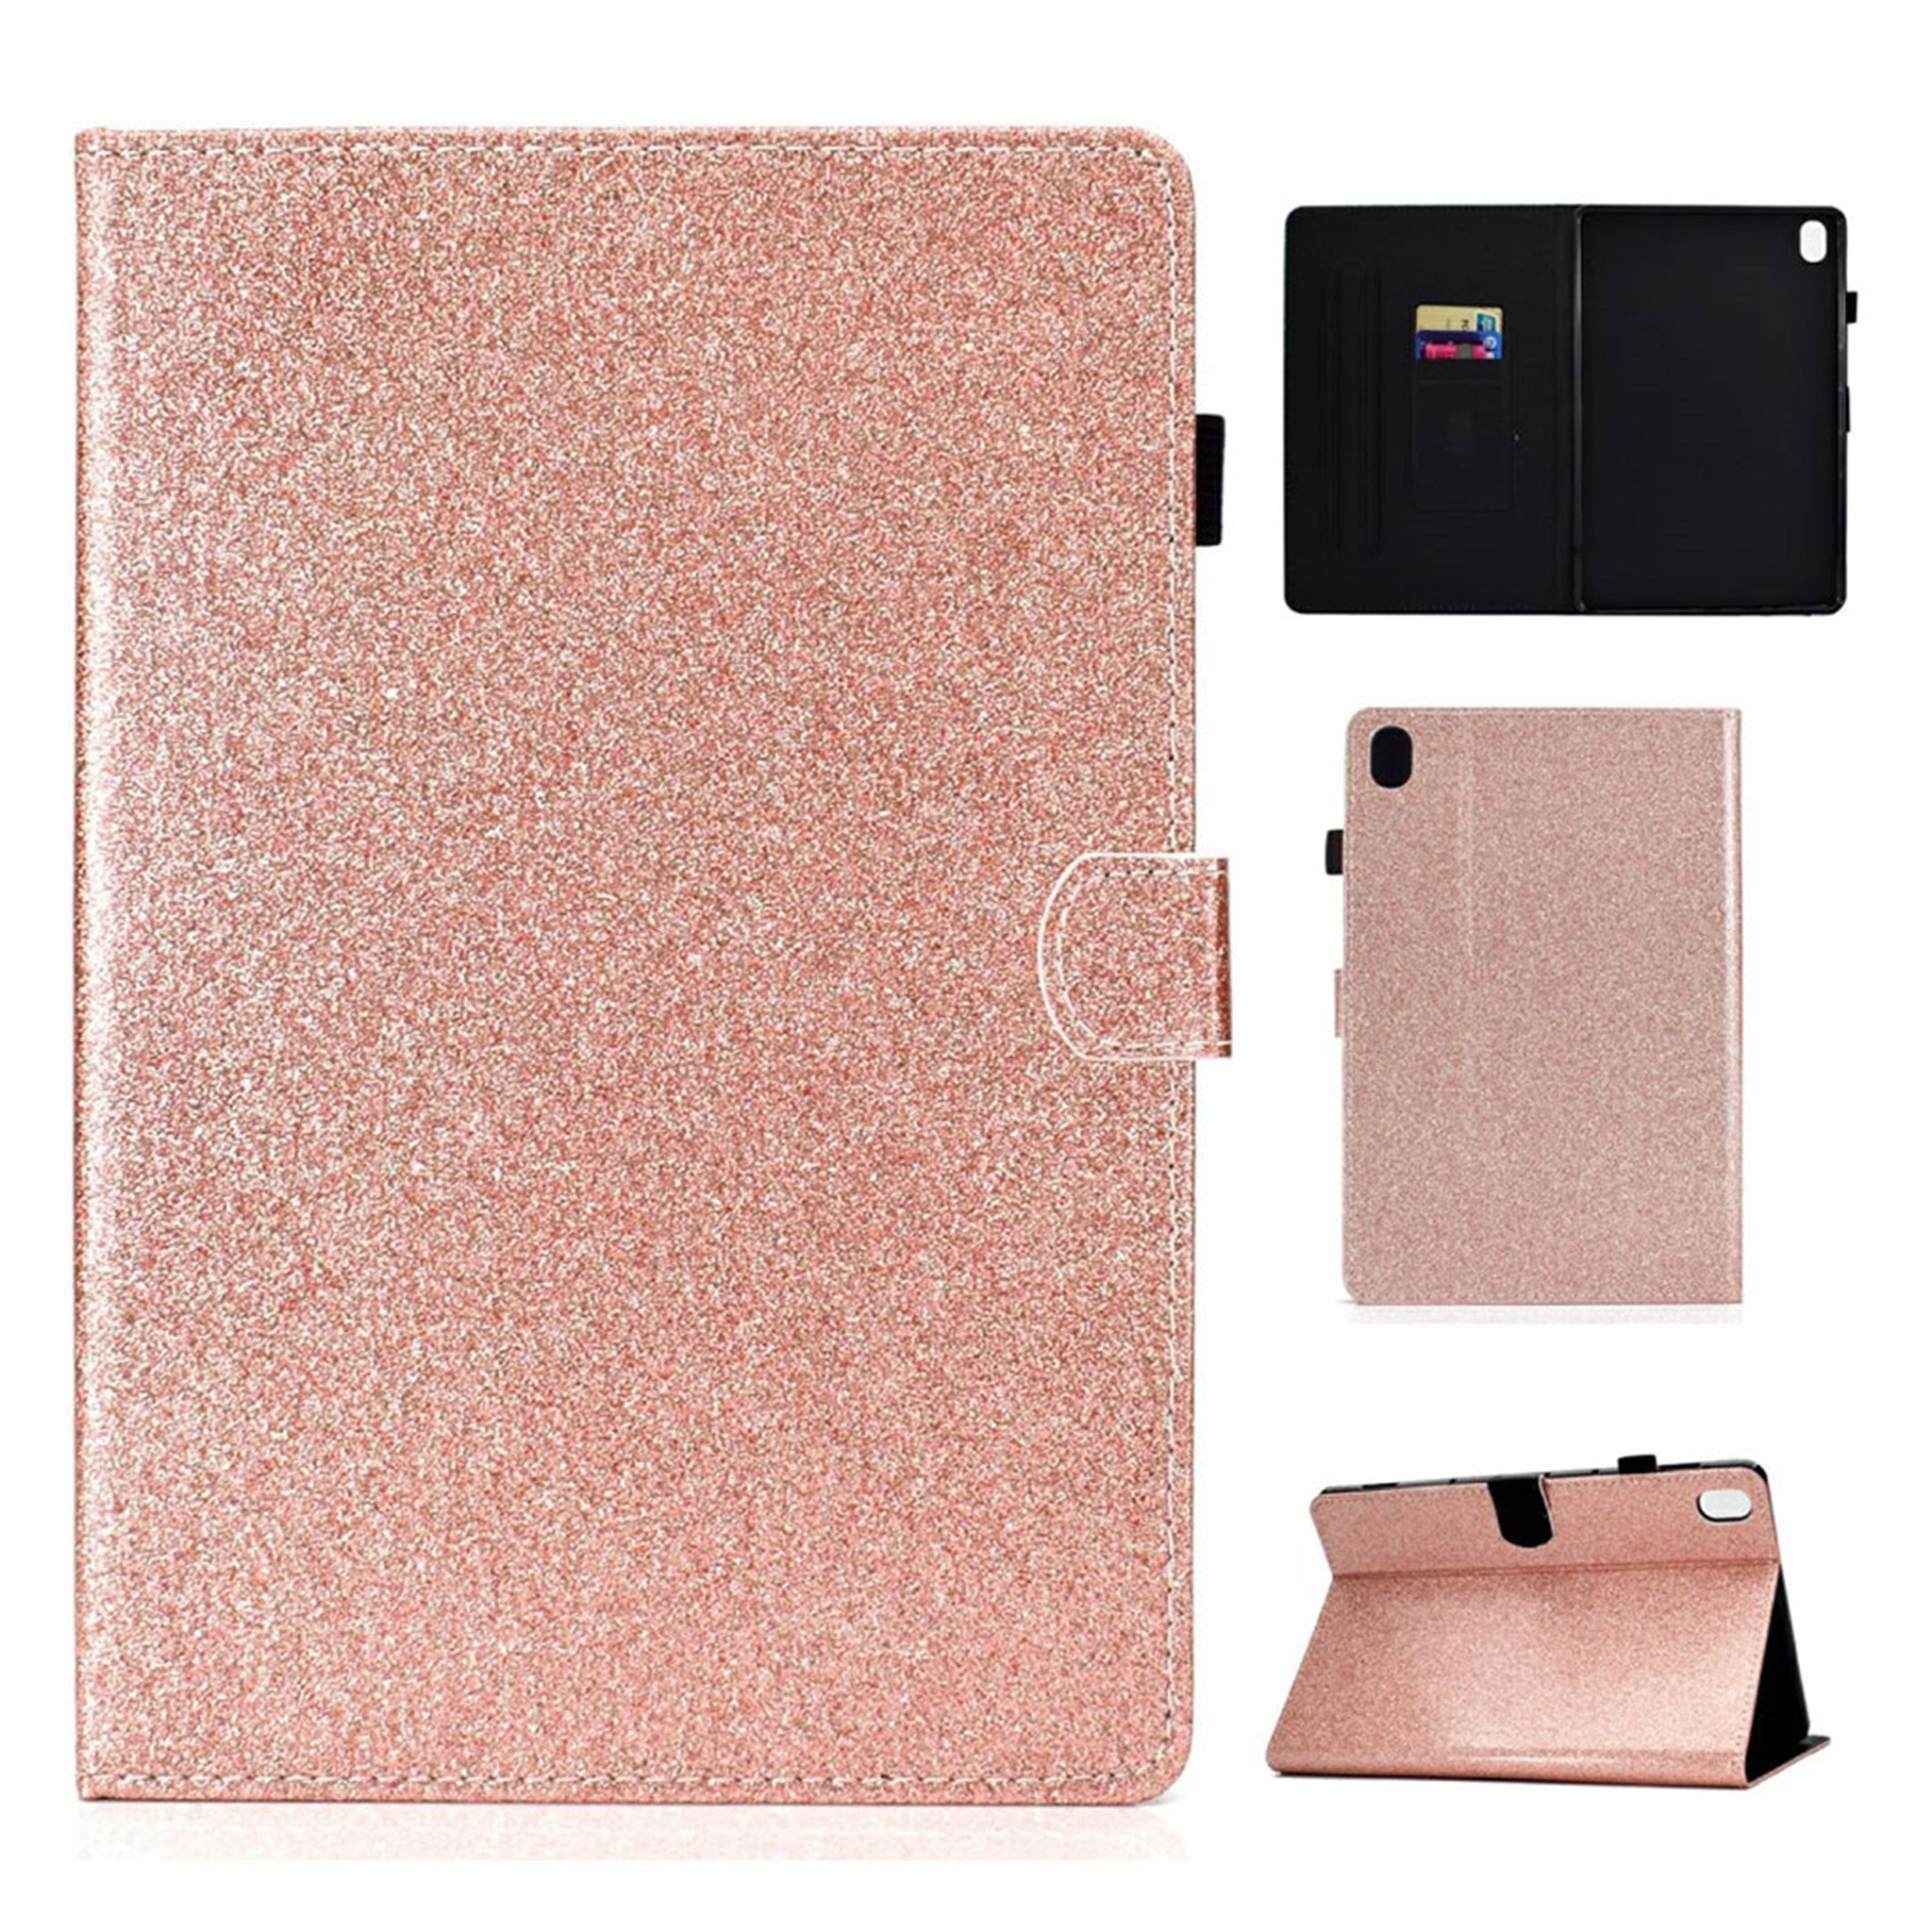 Huawei MediaPad M6 10.8 flash powder leather flip case - Rose Gold